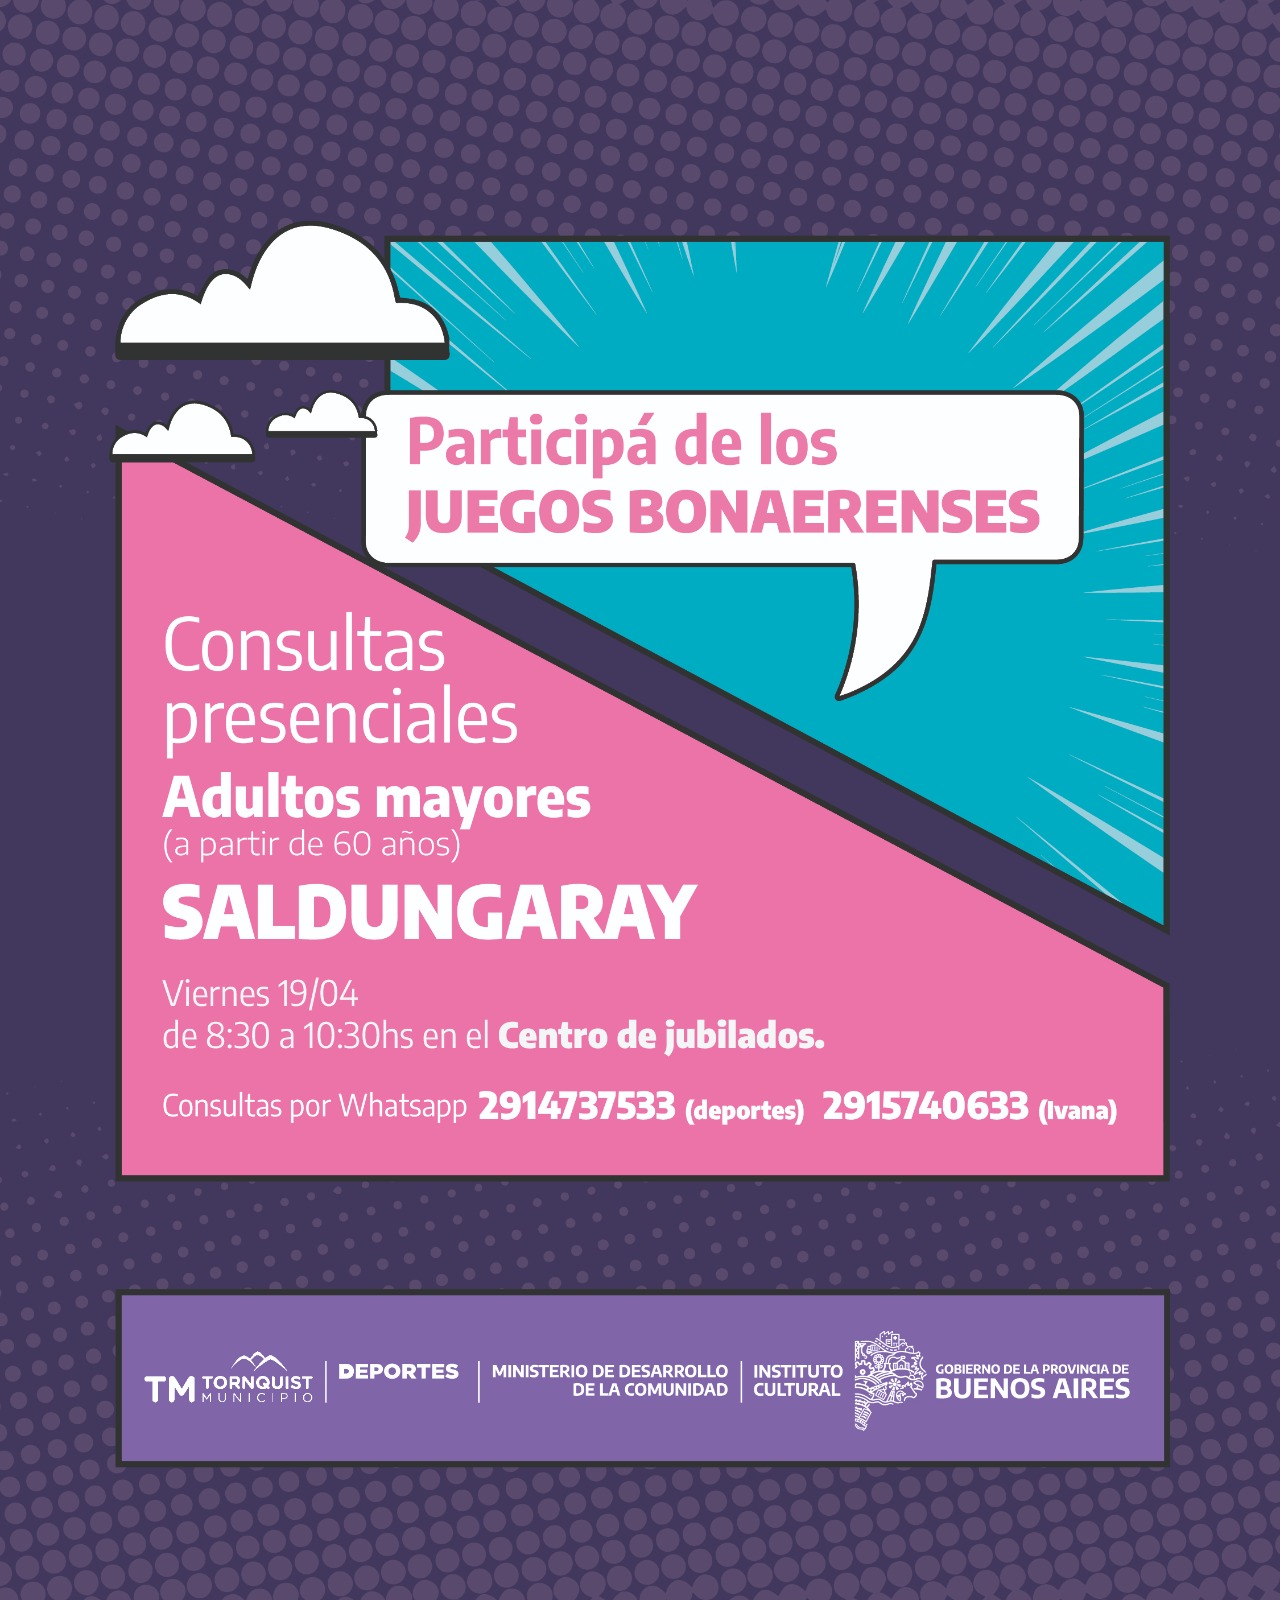 Juegos Bonaerenses: Consultas presenciales para adultos mayores en Sierra y Saldungaray